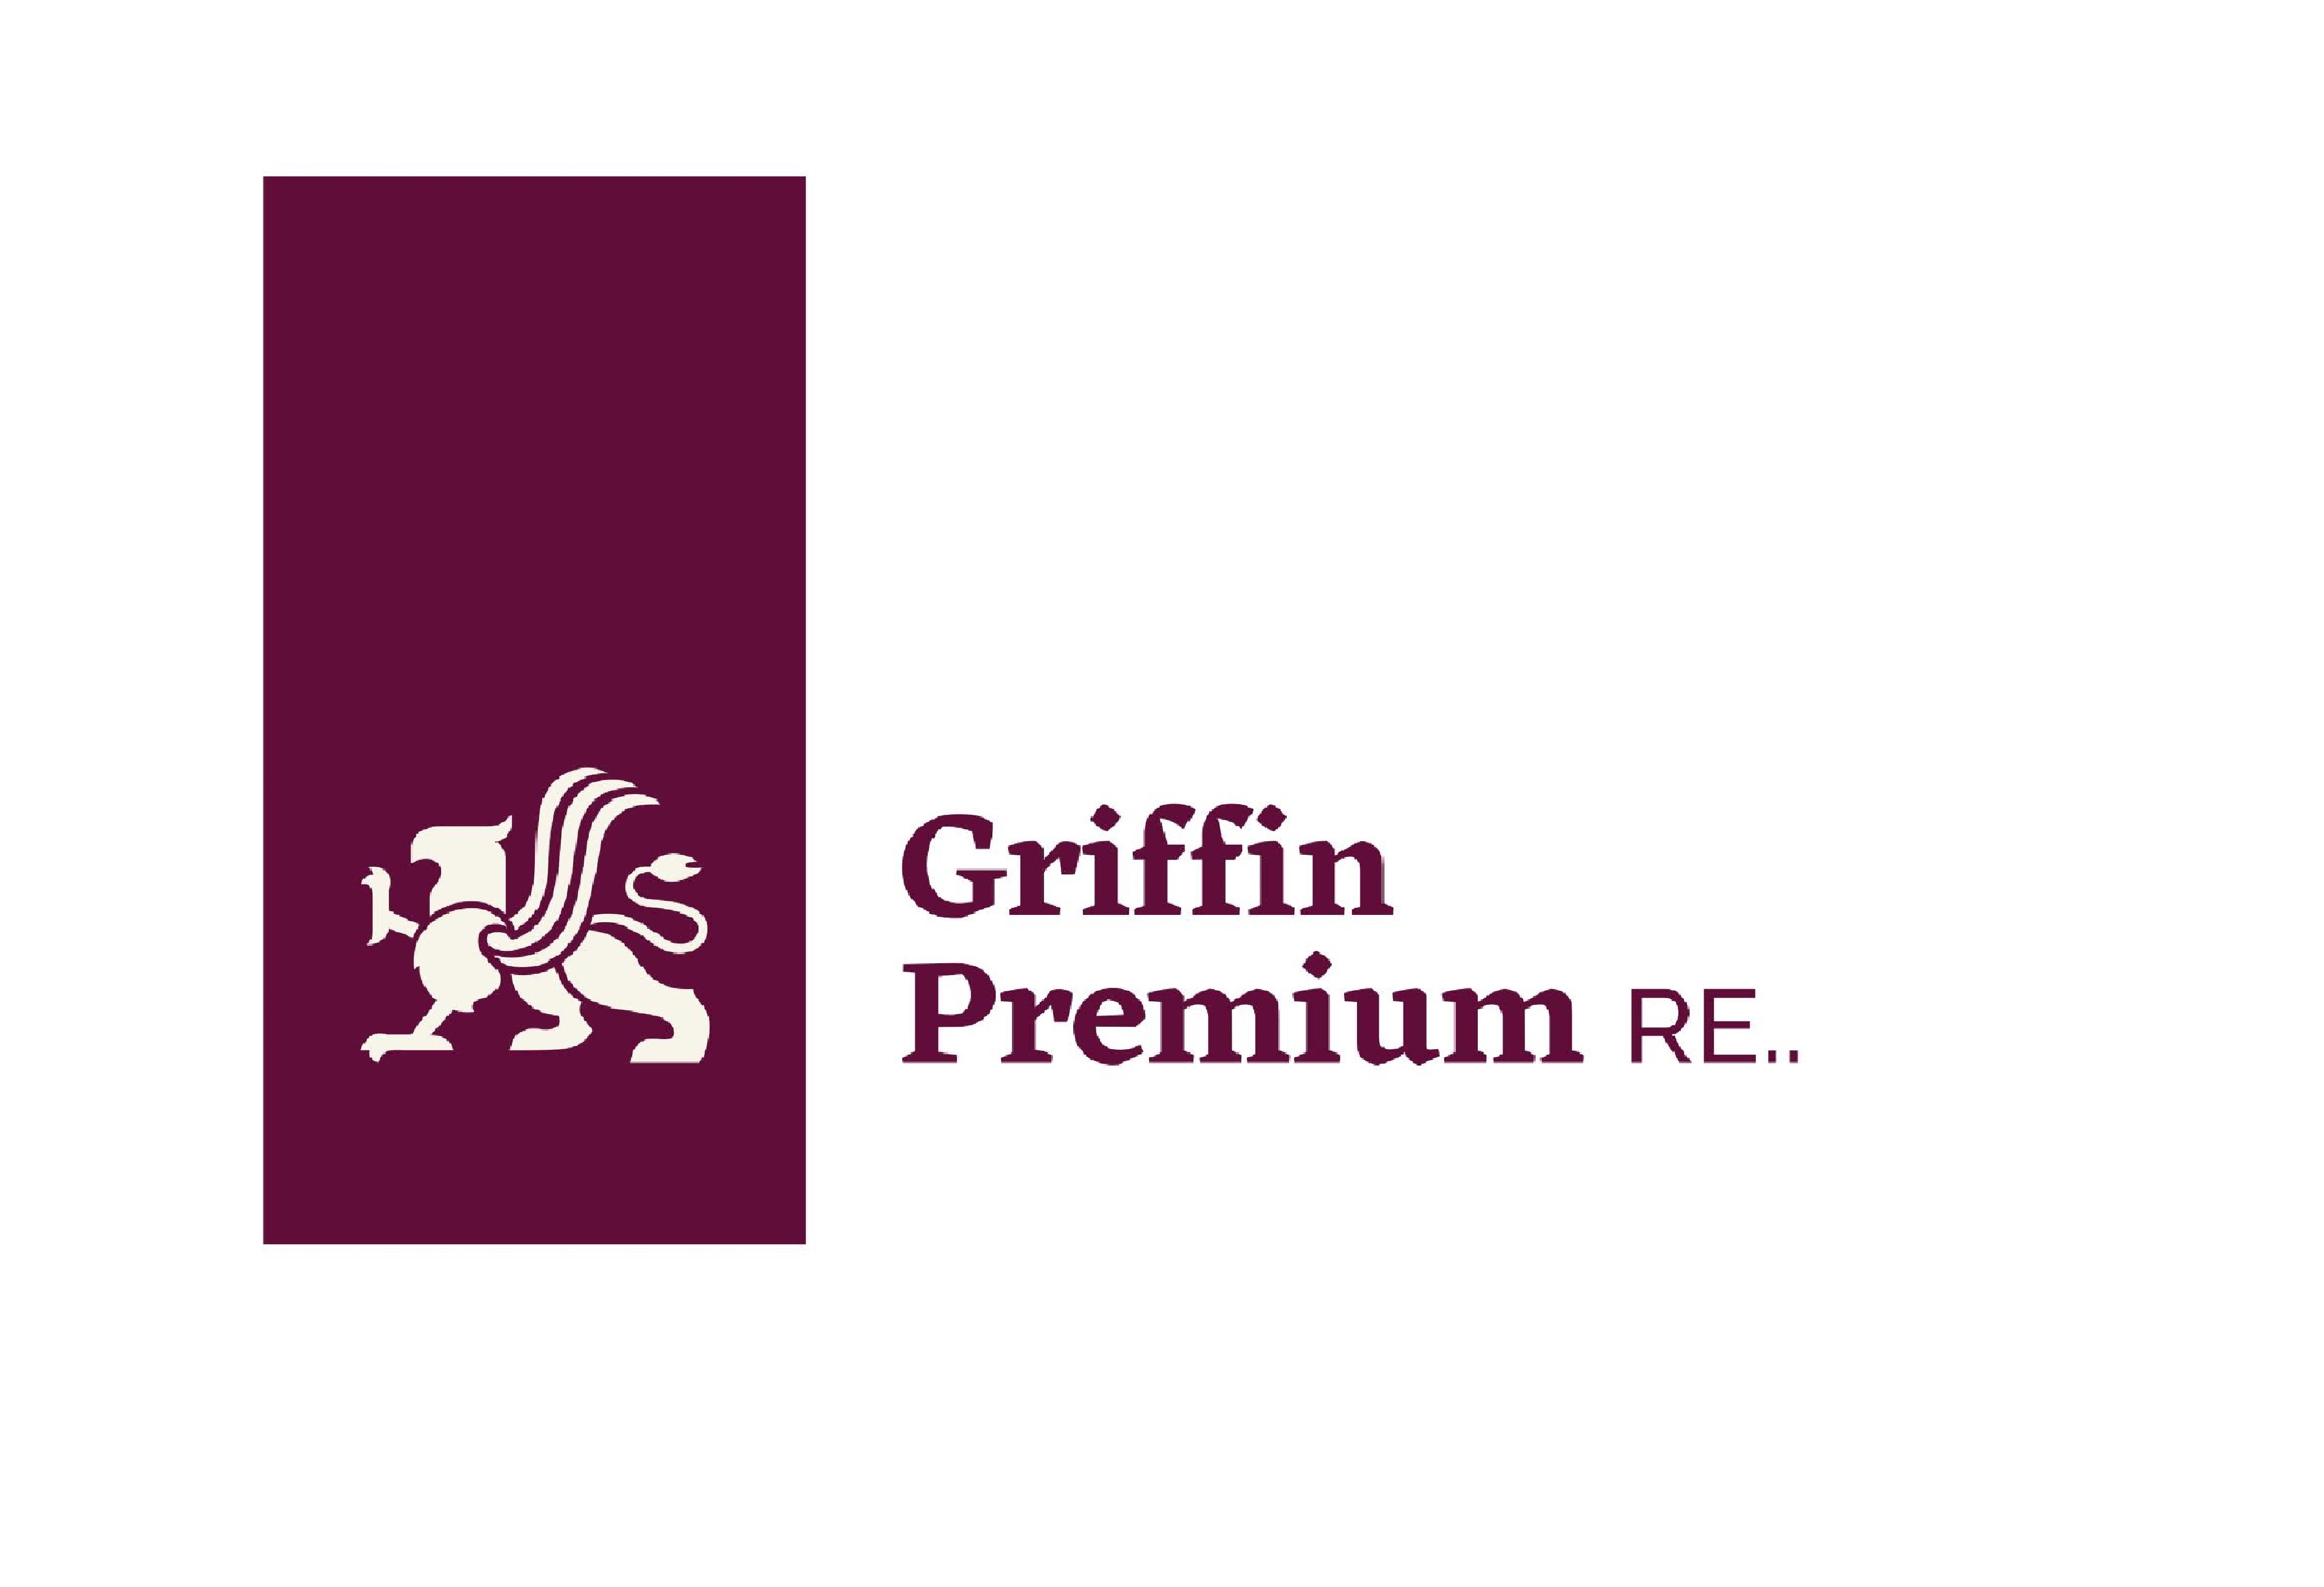 Griffin Premium RE..